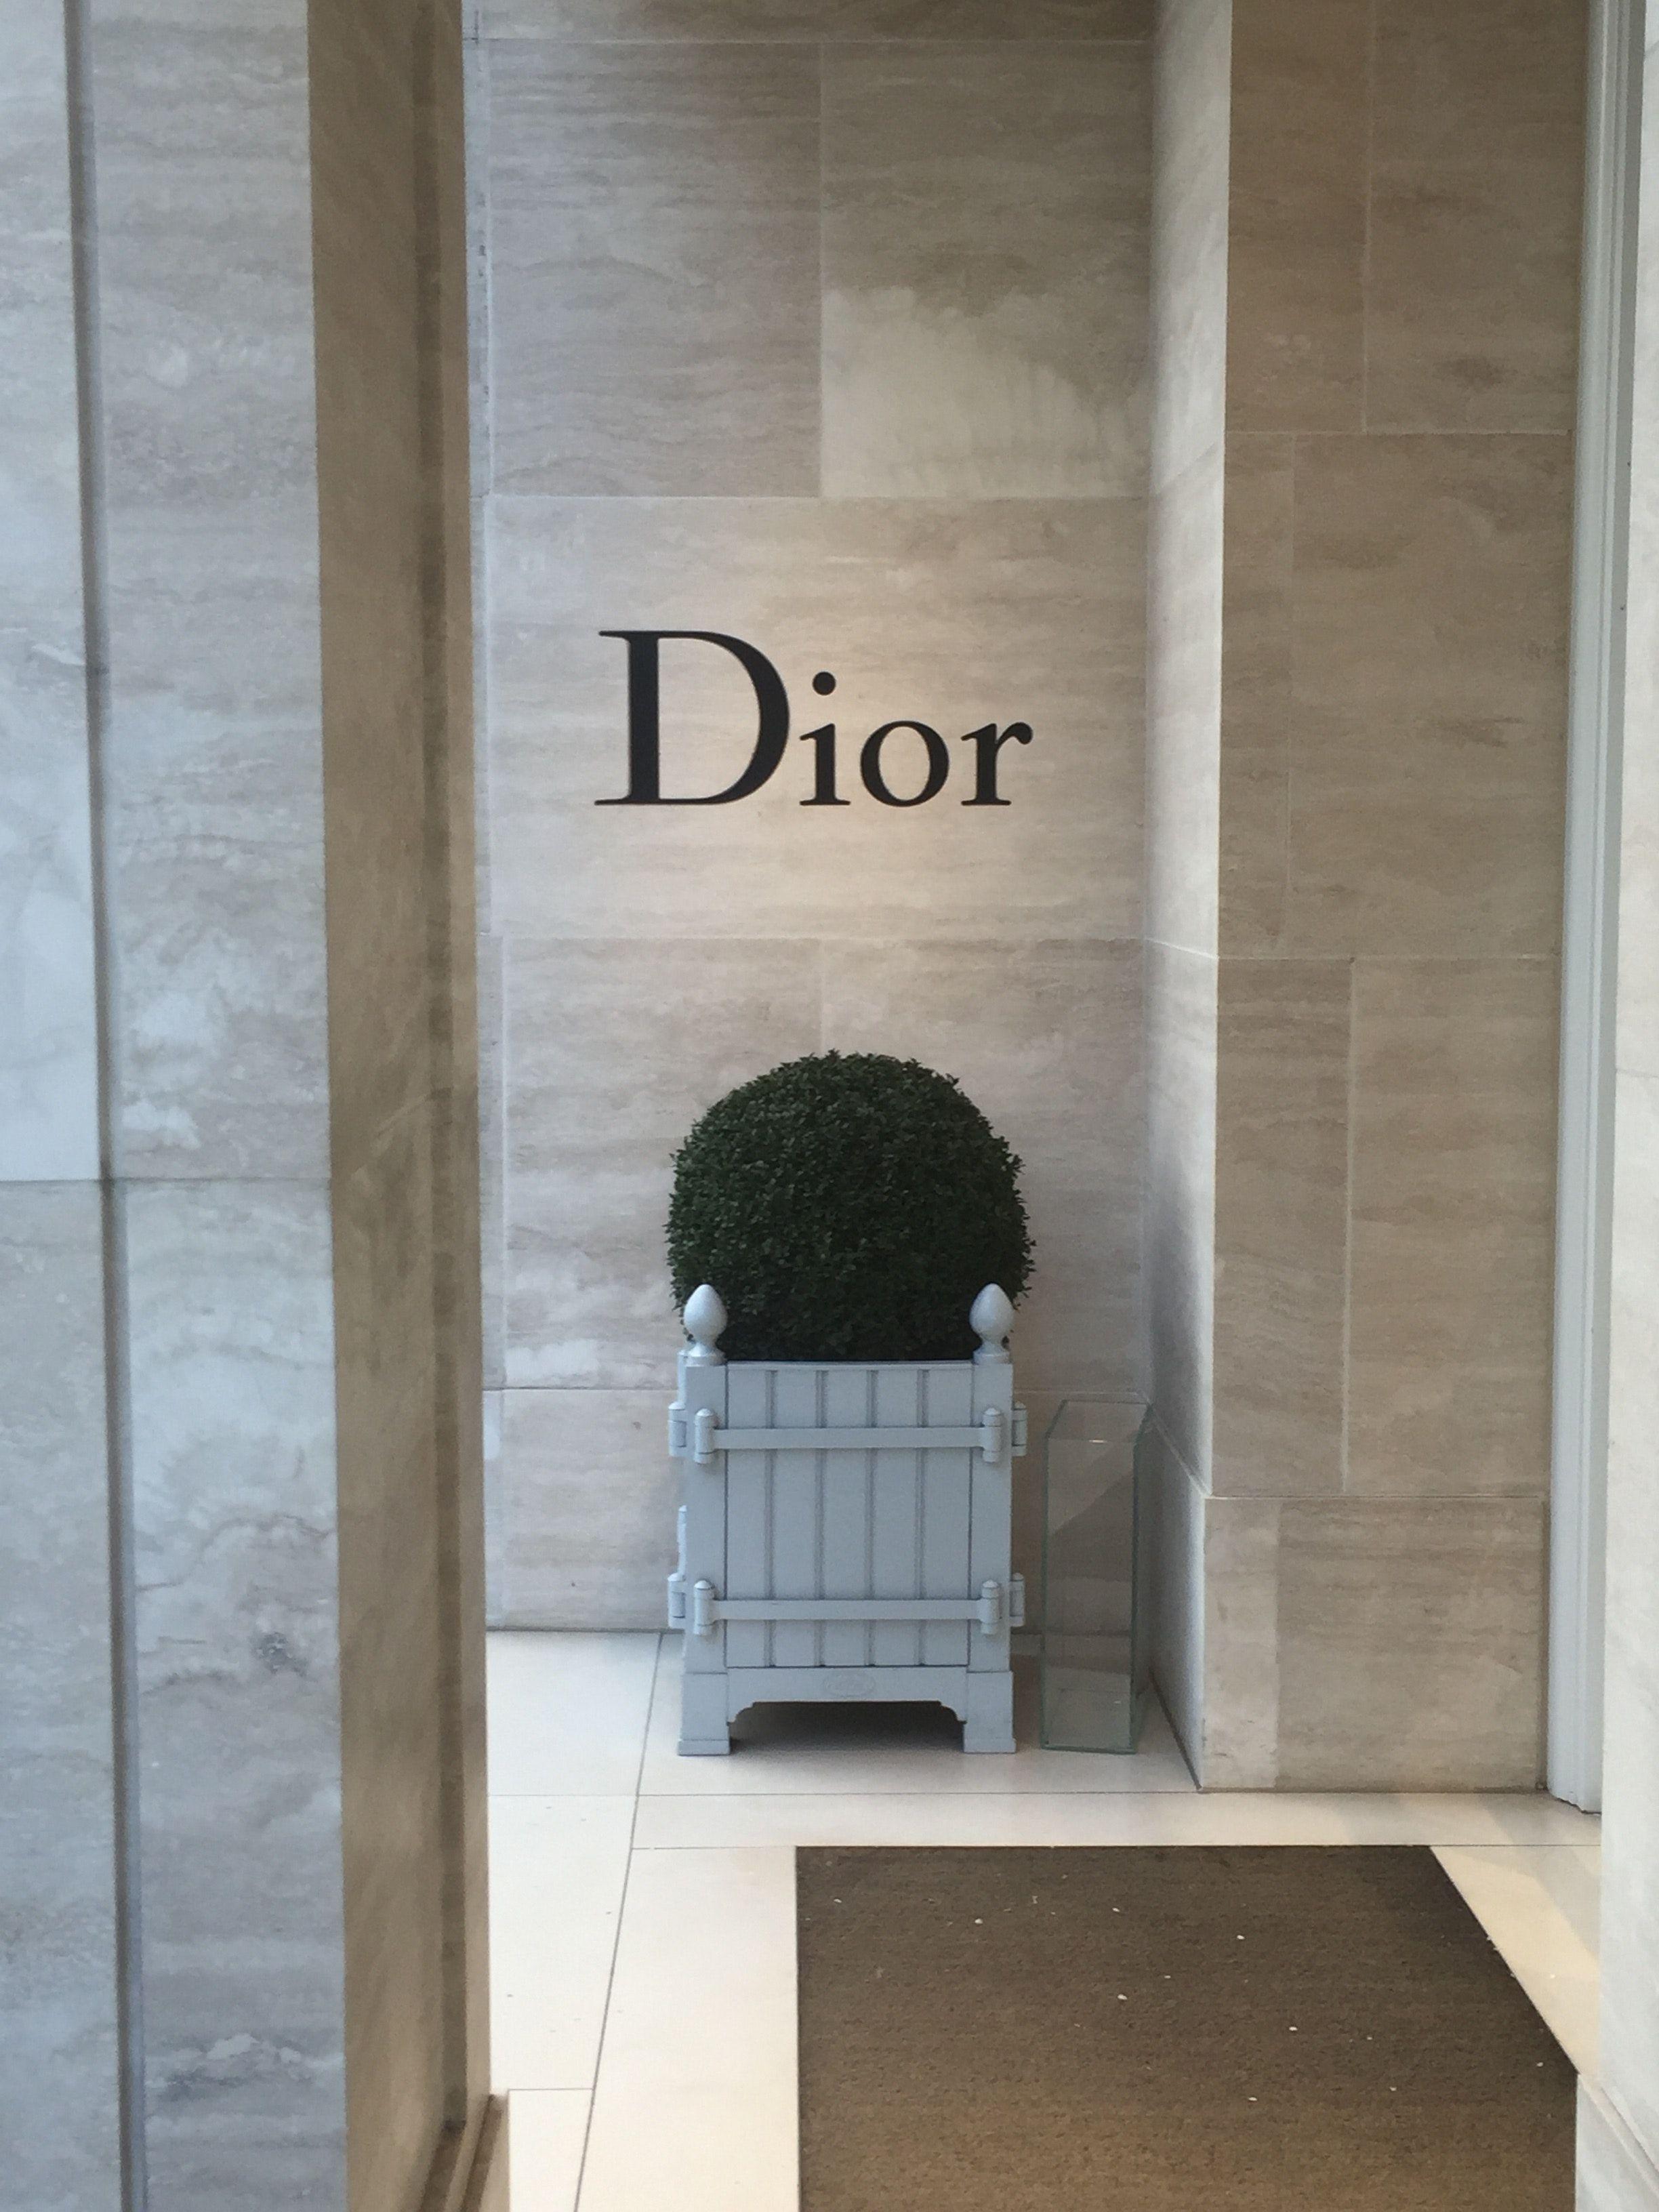 10 Dior ý tưởng  ảnh tường cho điện thoại hình ảnh hình nền iphone